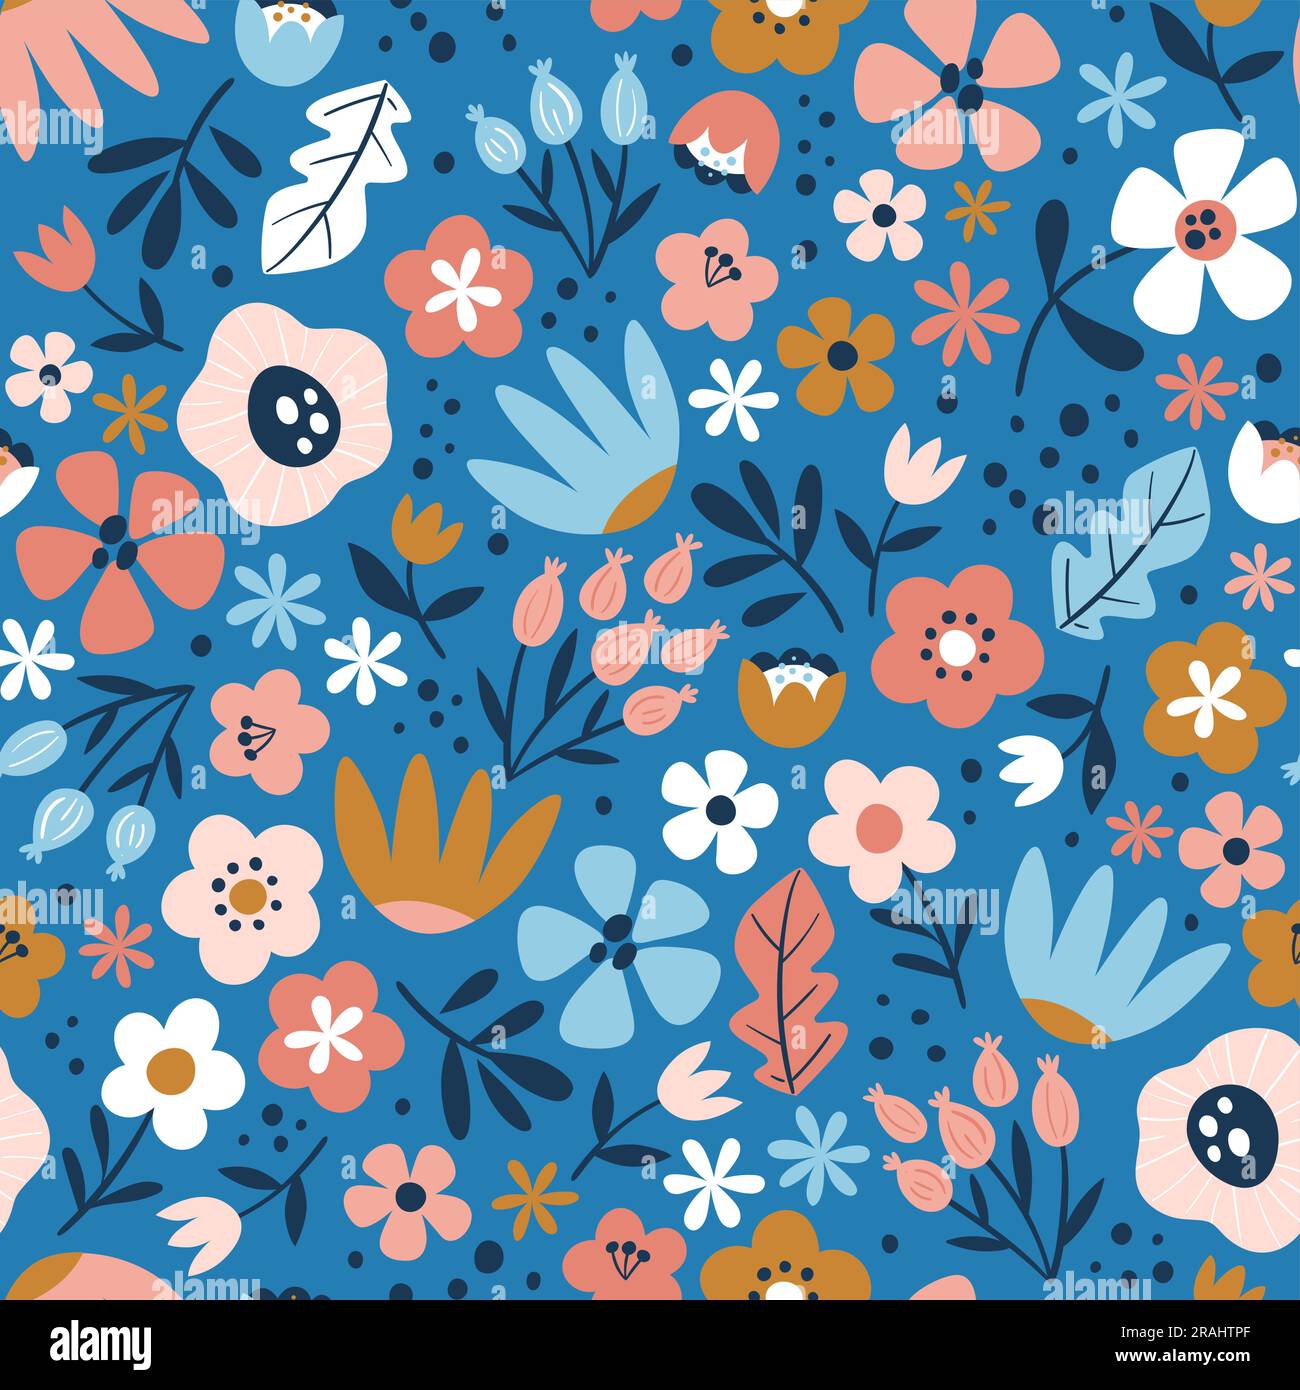 Nahtloses Blumenmuster auf blauem Hintergrund. Süßes Wiederholungsmuster mit bunten, isolierten Blumen. Quadratisches Design. Vektordarstellung. Stock Vektor